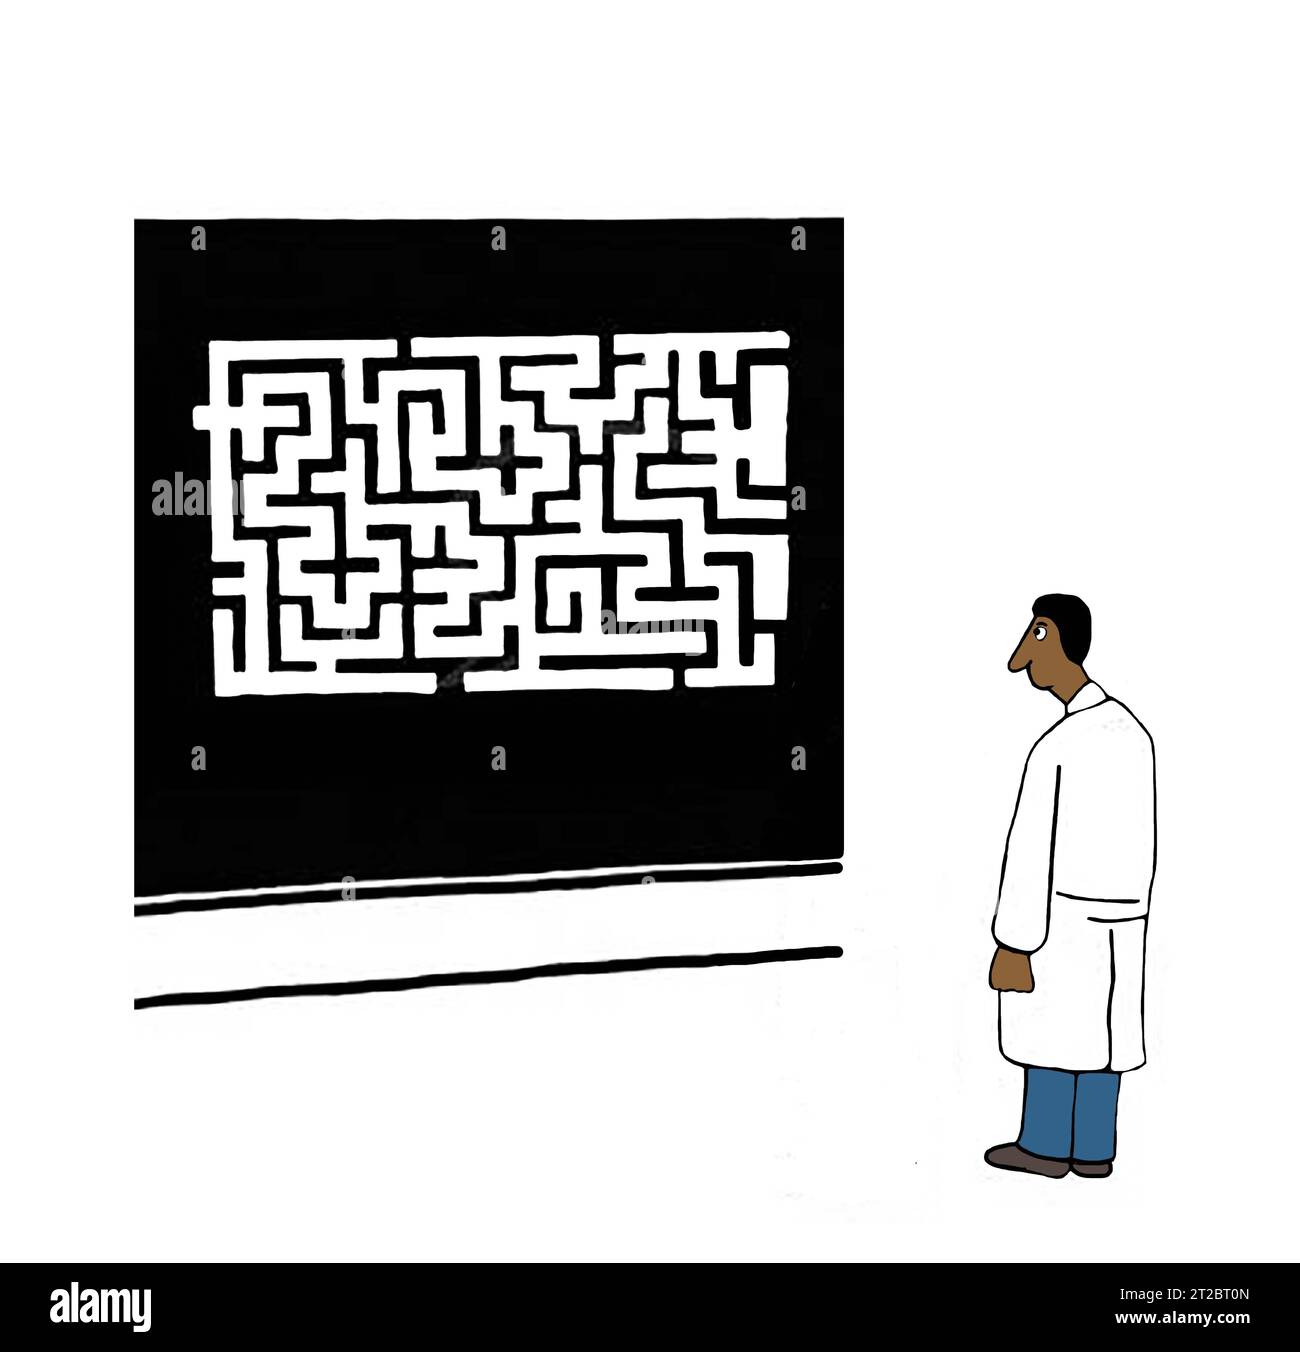 Ein schwarzer Wissenschaftler muss durch ein Labyrinth gehen, um das Problem zu lösen. Stockfoto